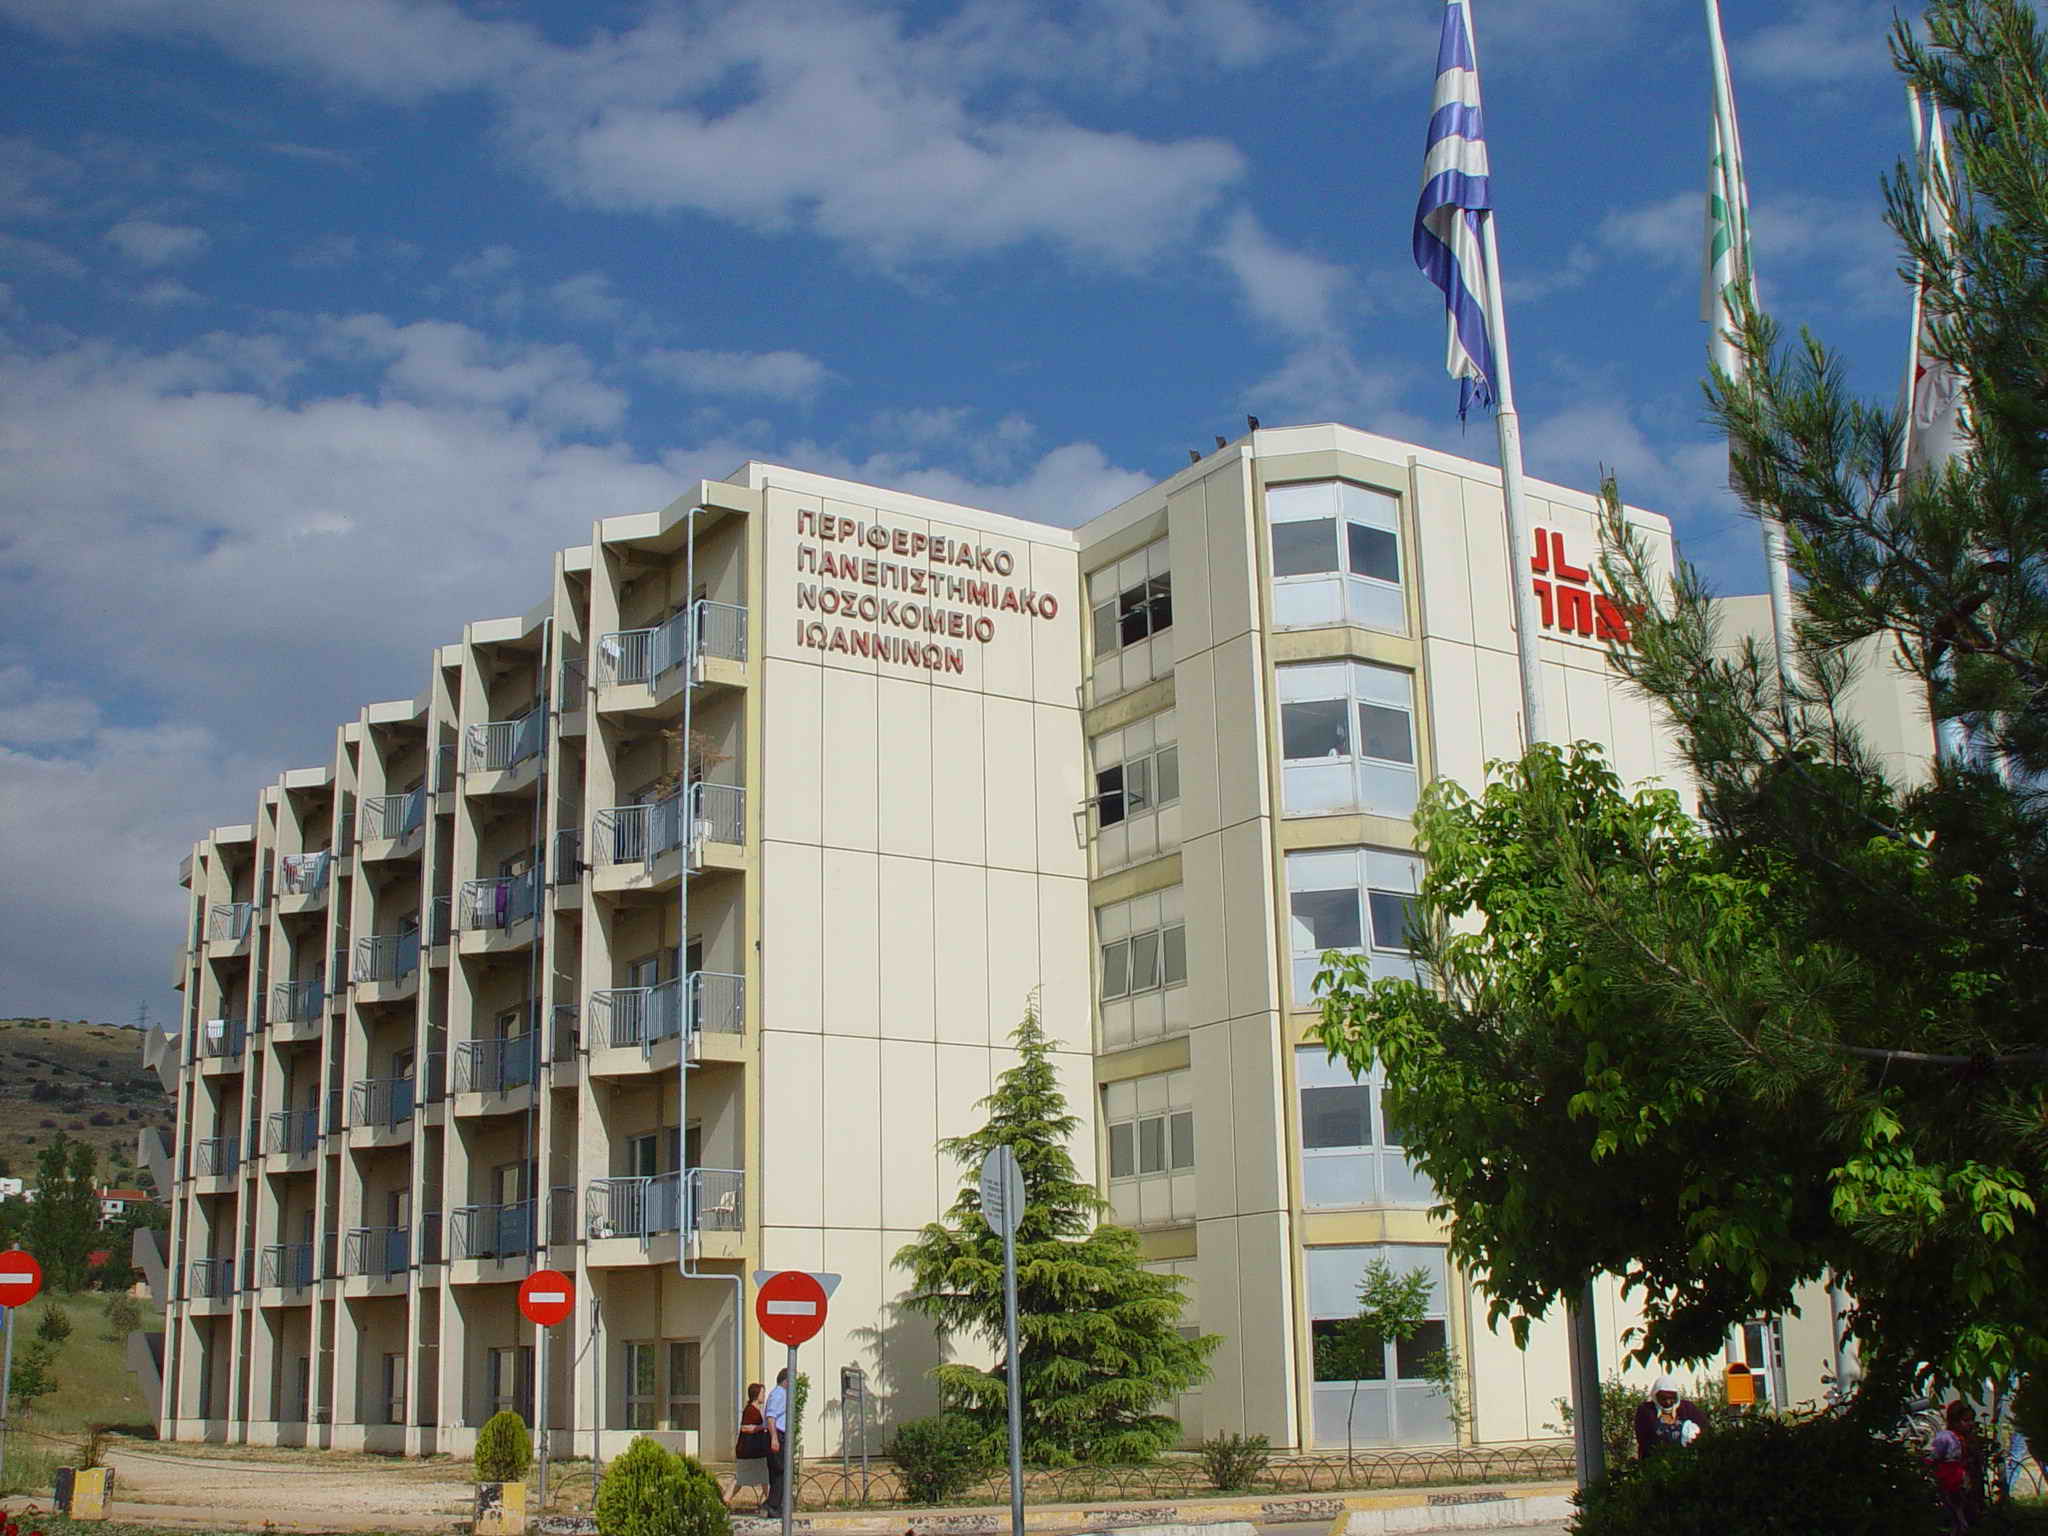 Το Πανεπιστημιακό Νοσοκομείο Ιωαννίνων έμεινε χωρίς βηματοδότες